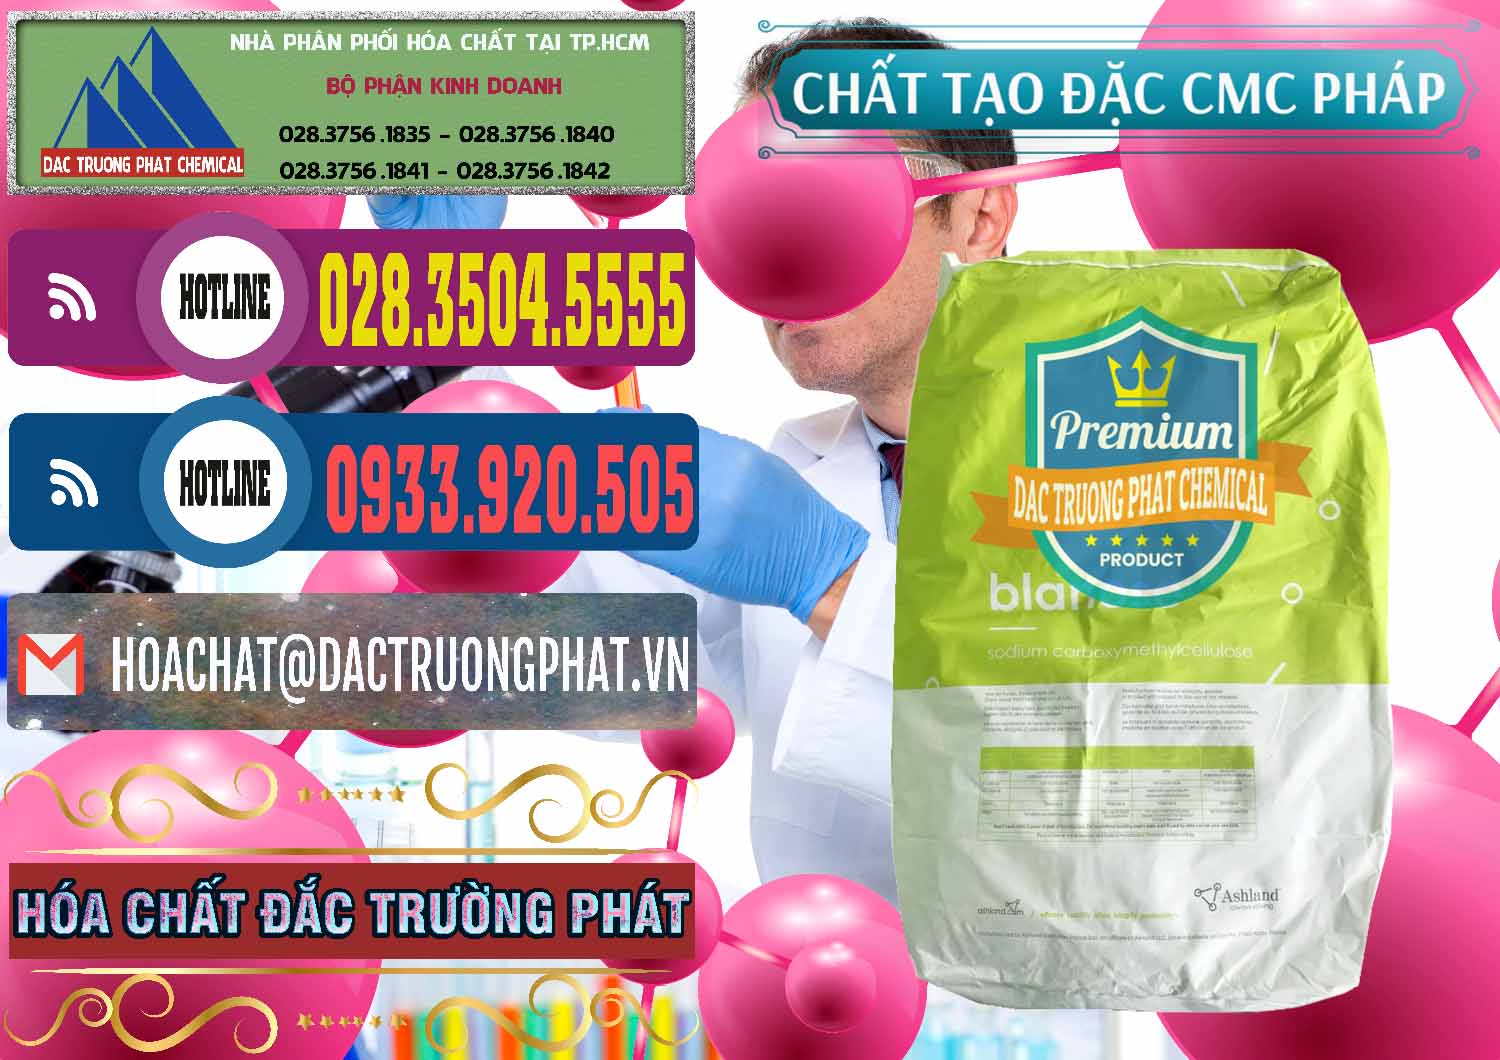 Cty chuyên cung cấp và bán Chất Tạo Đặc CMC - Carboxyl Methyl Cellulose Pháp France - 0394 - Cty chuyên nhập khẩu ( cung cấp ) hóa chất tại TP.HCM - muabanhoachat.com.vn